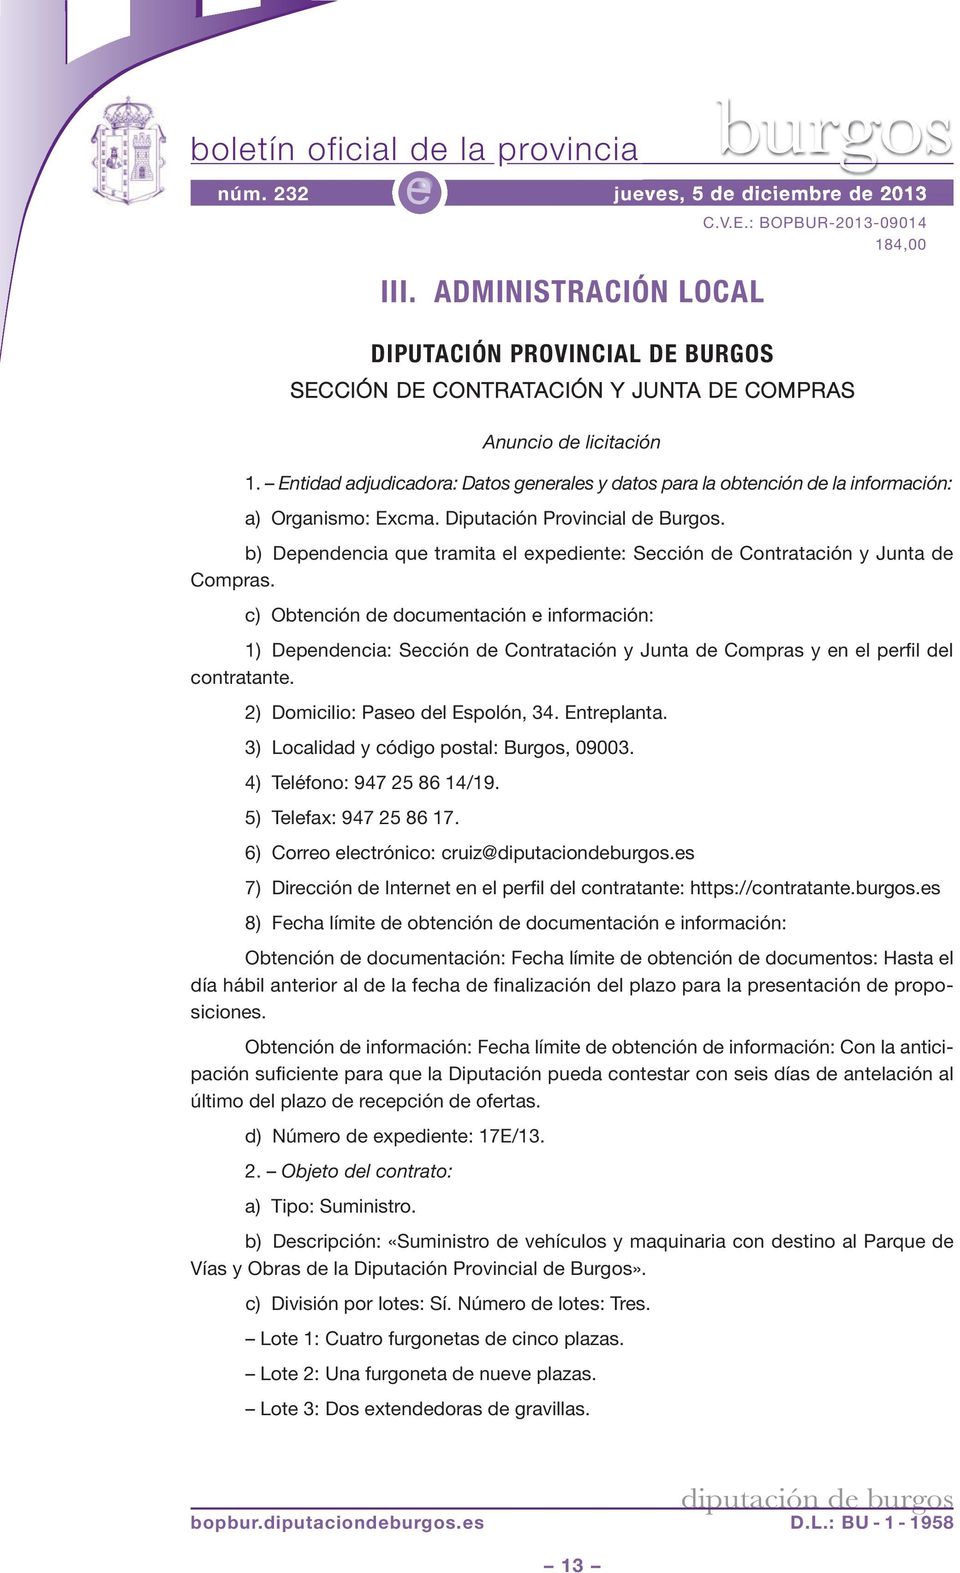 Entidad adjudicadora: Datos gnrals y datos para la obtnción d la información: a) Organismo: Excma. Diputación Provincial d Burgos.